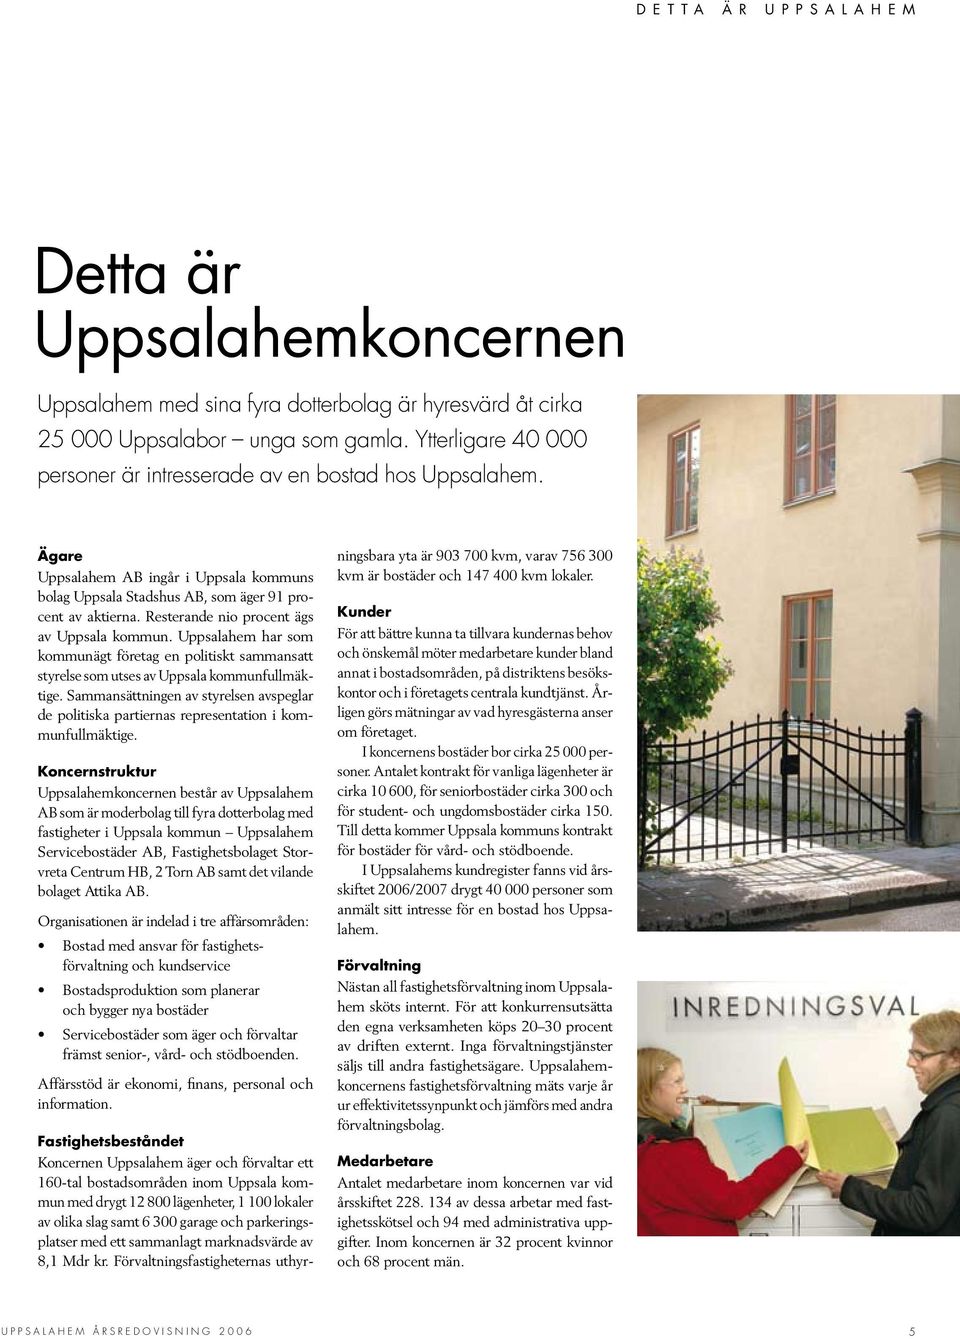 Resterande nio procent ägs av Uppsala kommun. Uppsalahem har som kommunägt företag en politiskt sammansatt styrelse som utses av Uppsala kommunfullmäktige.